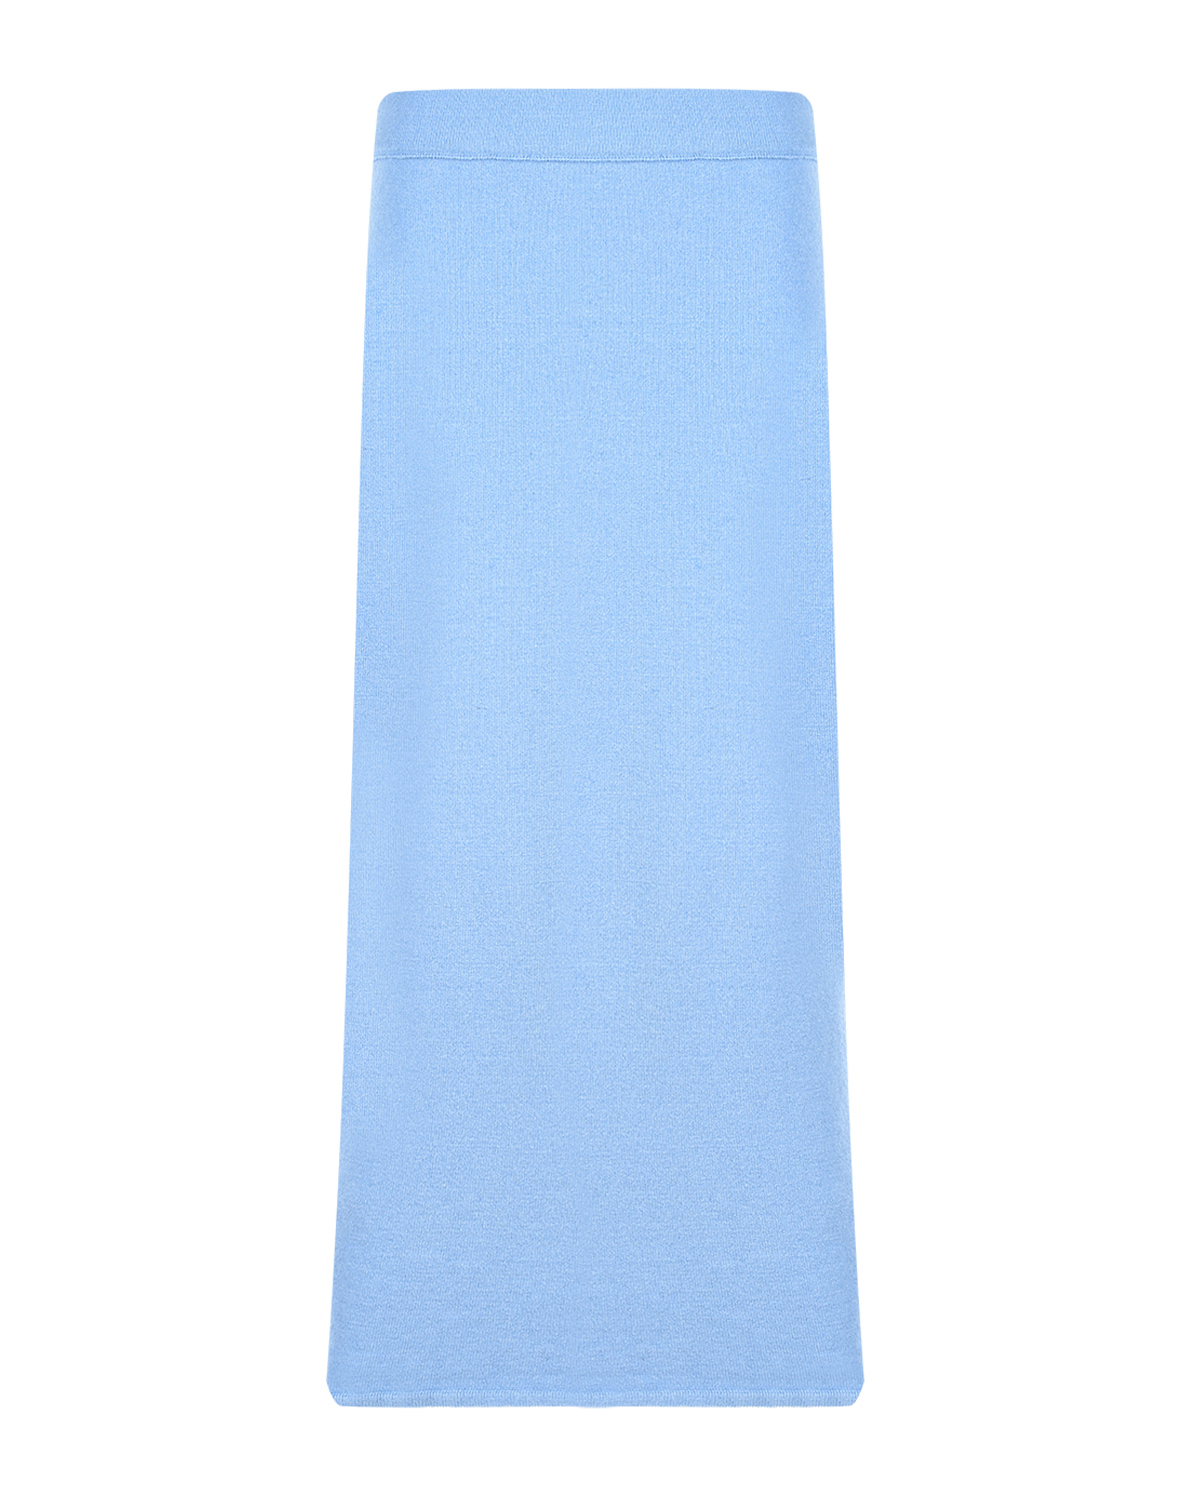 Голубая юбка-миди для беременных Gardena Pietro Brunelli, размер 42, цвет голубой - фото 5